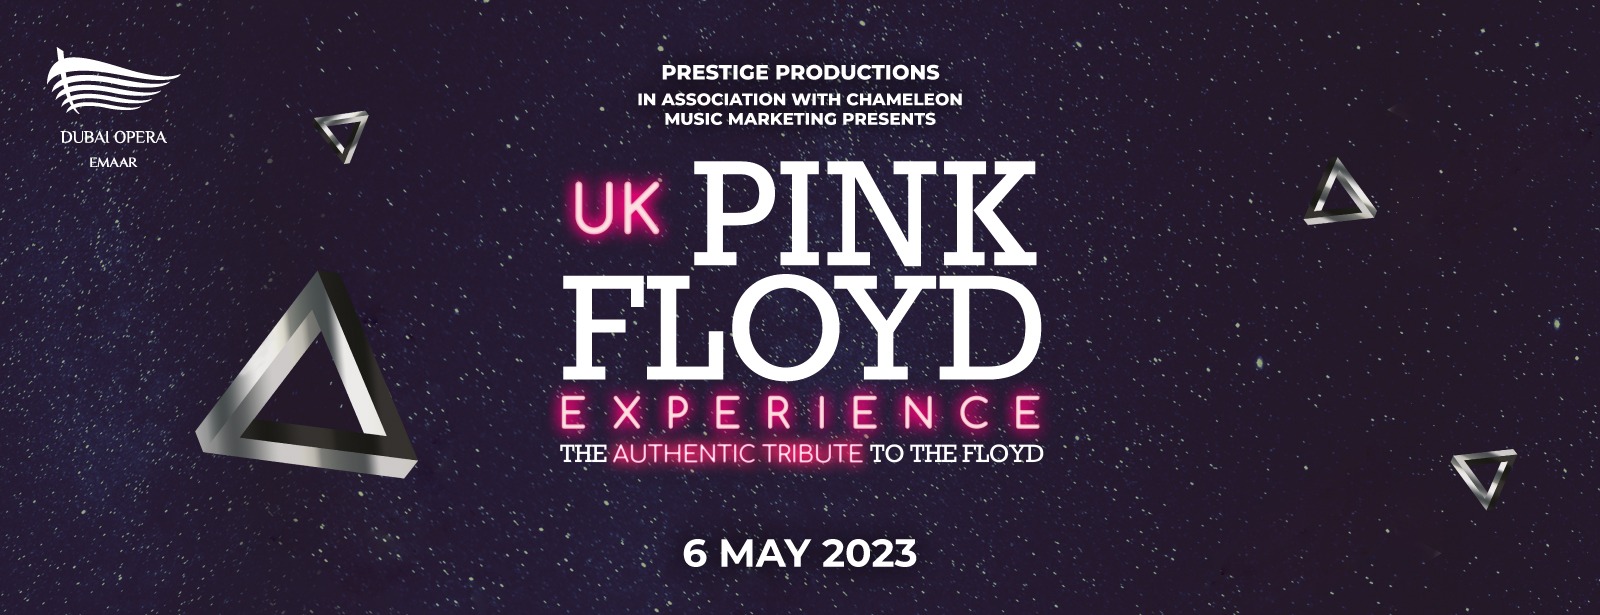 UK Pink Floyd Experience 2023 at Dubai Opera - Coming Soon in UAE